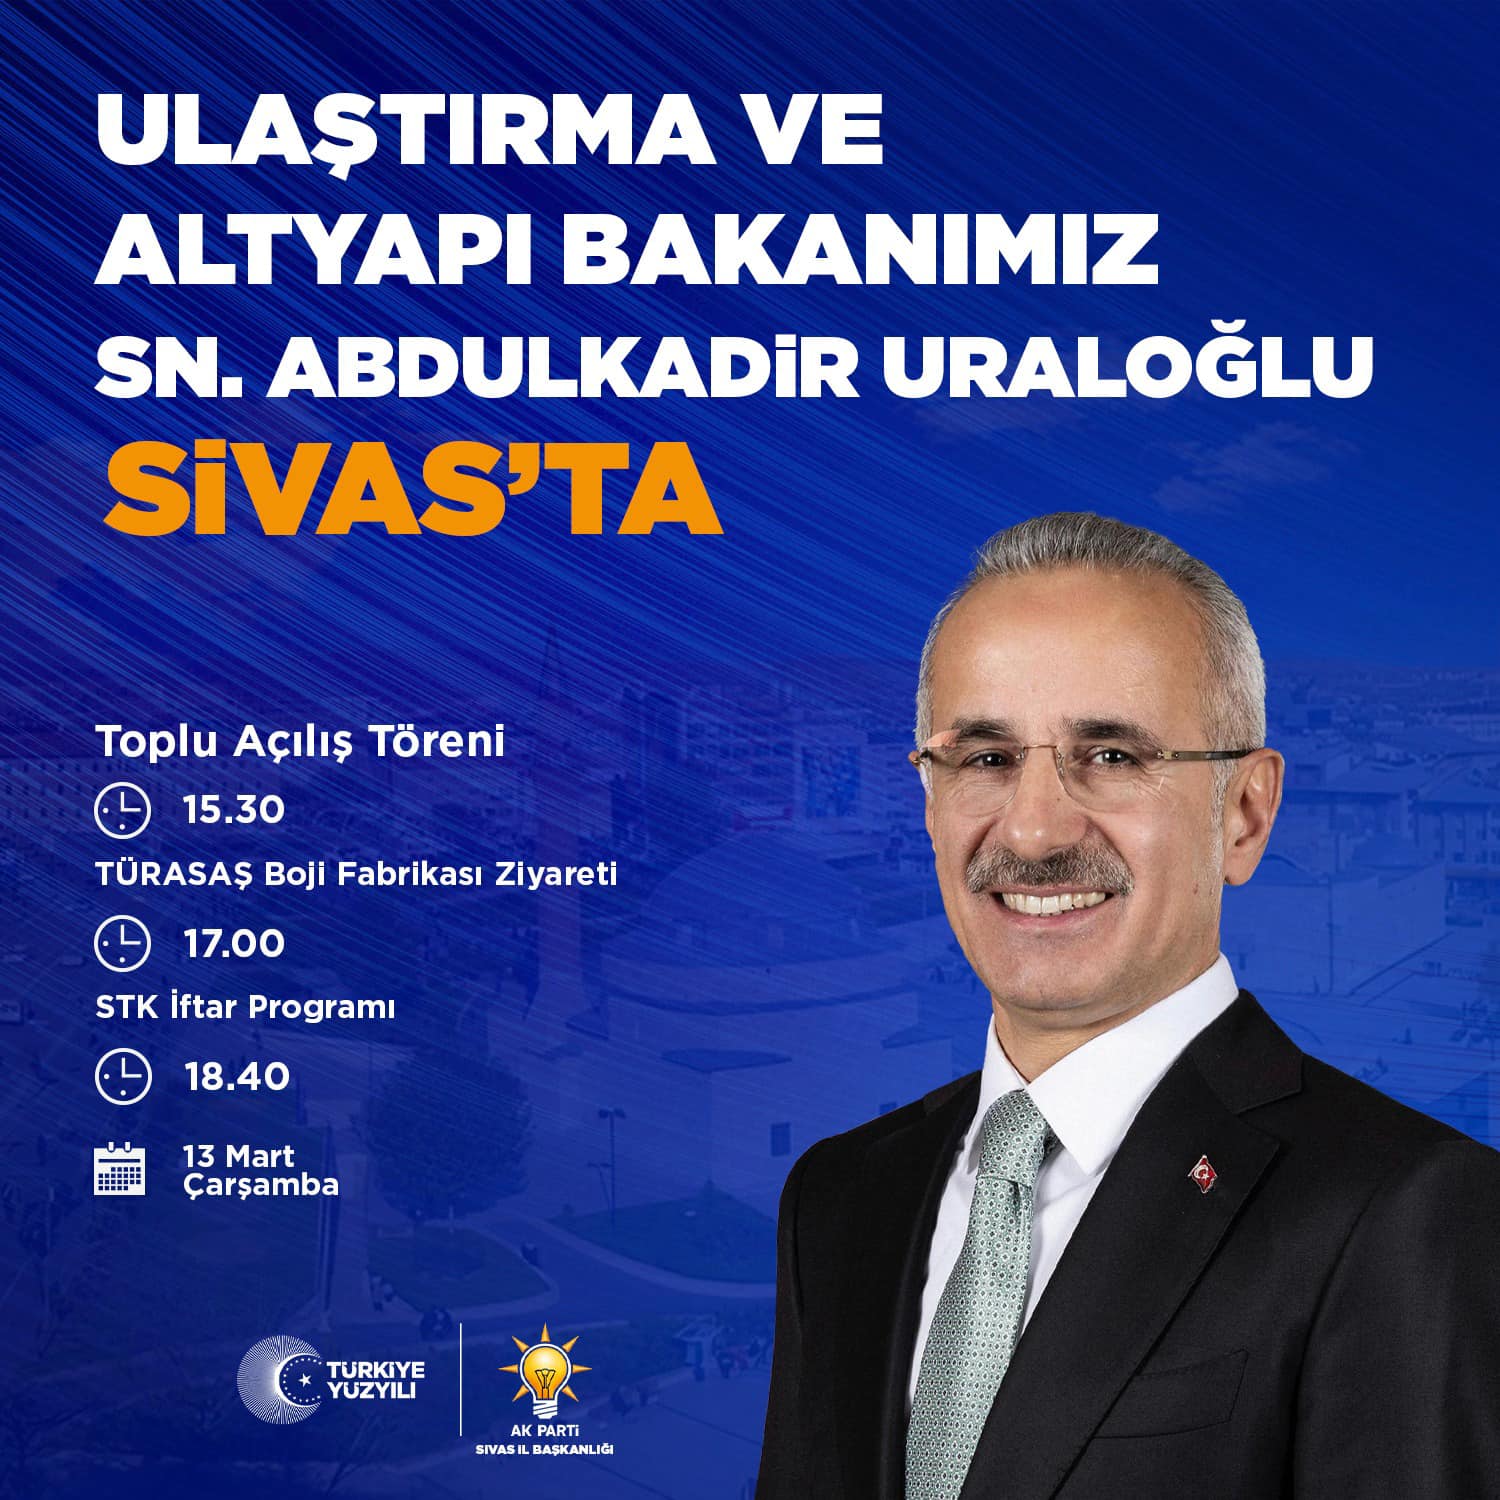 Yarın Ulaştırma Bakanı Abdulkadir Uraloğlu Müjdelerle gelecek mi